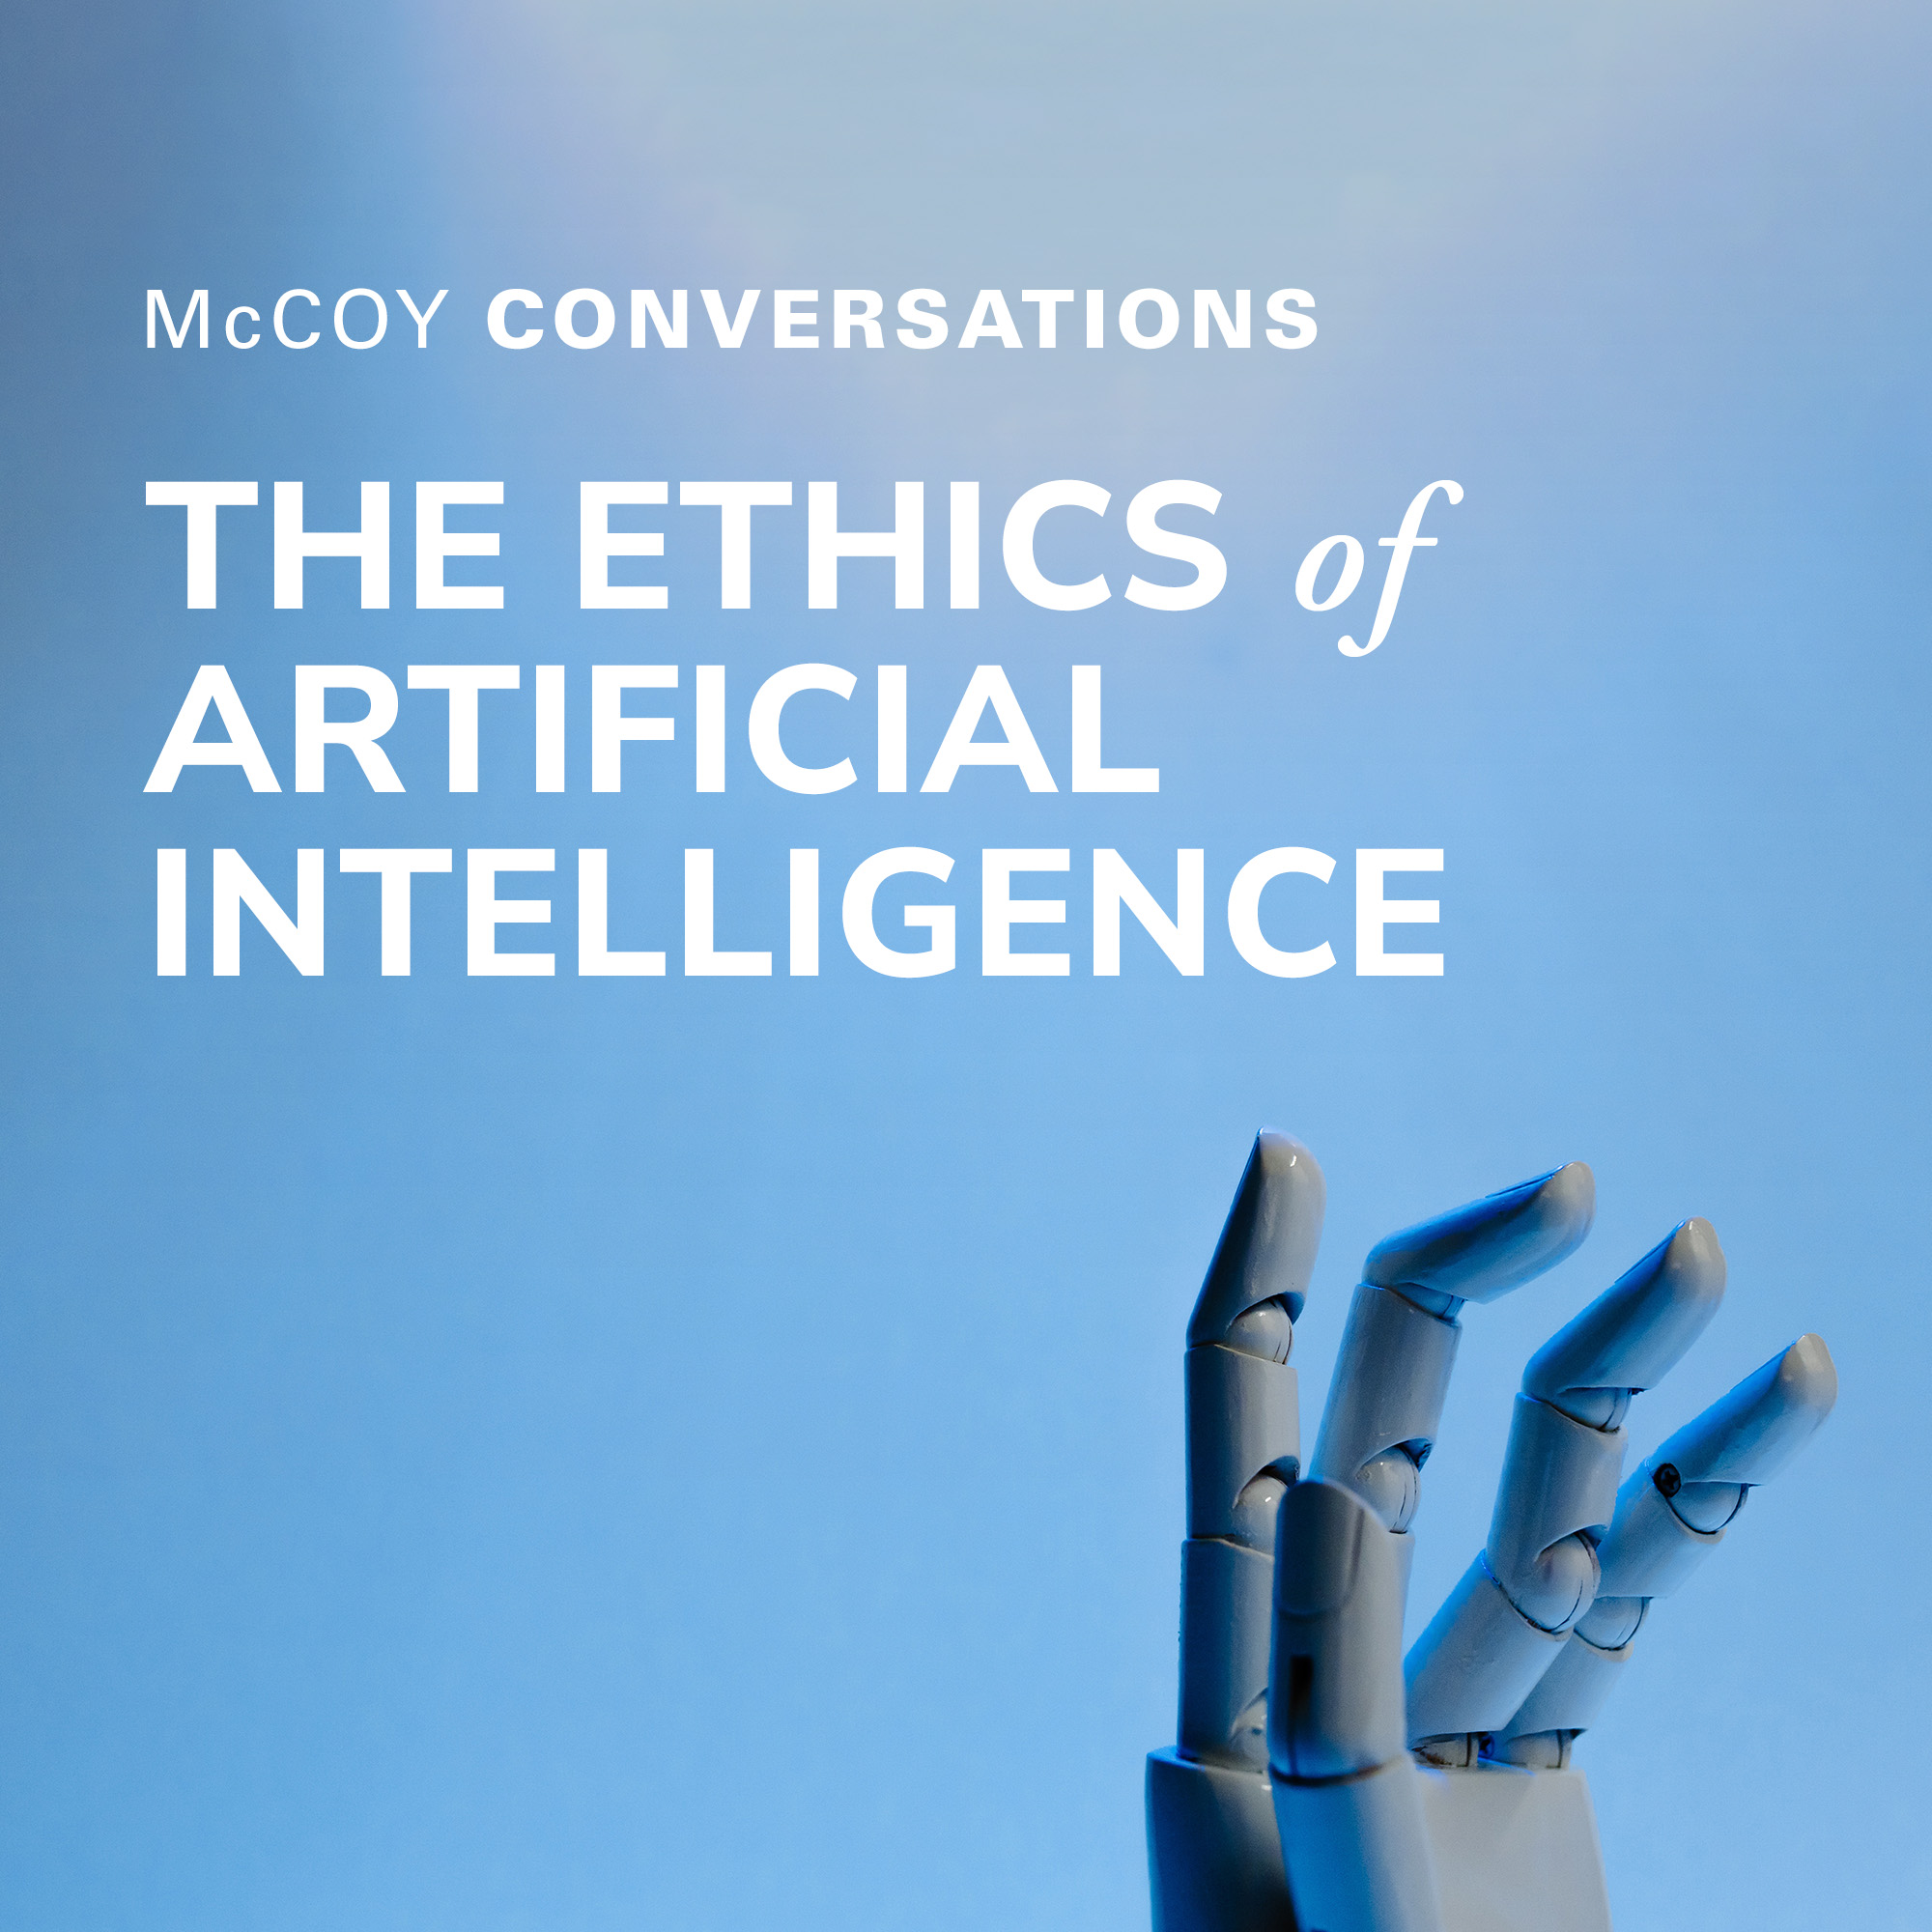 McCoy Conversations 2022